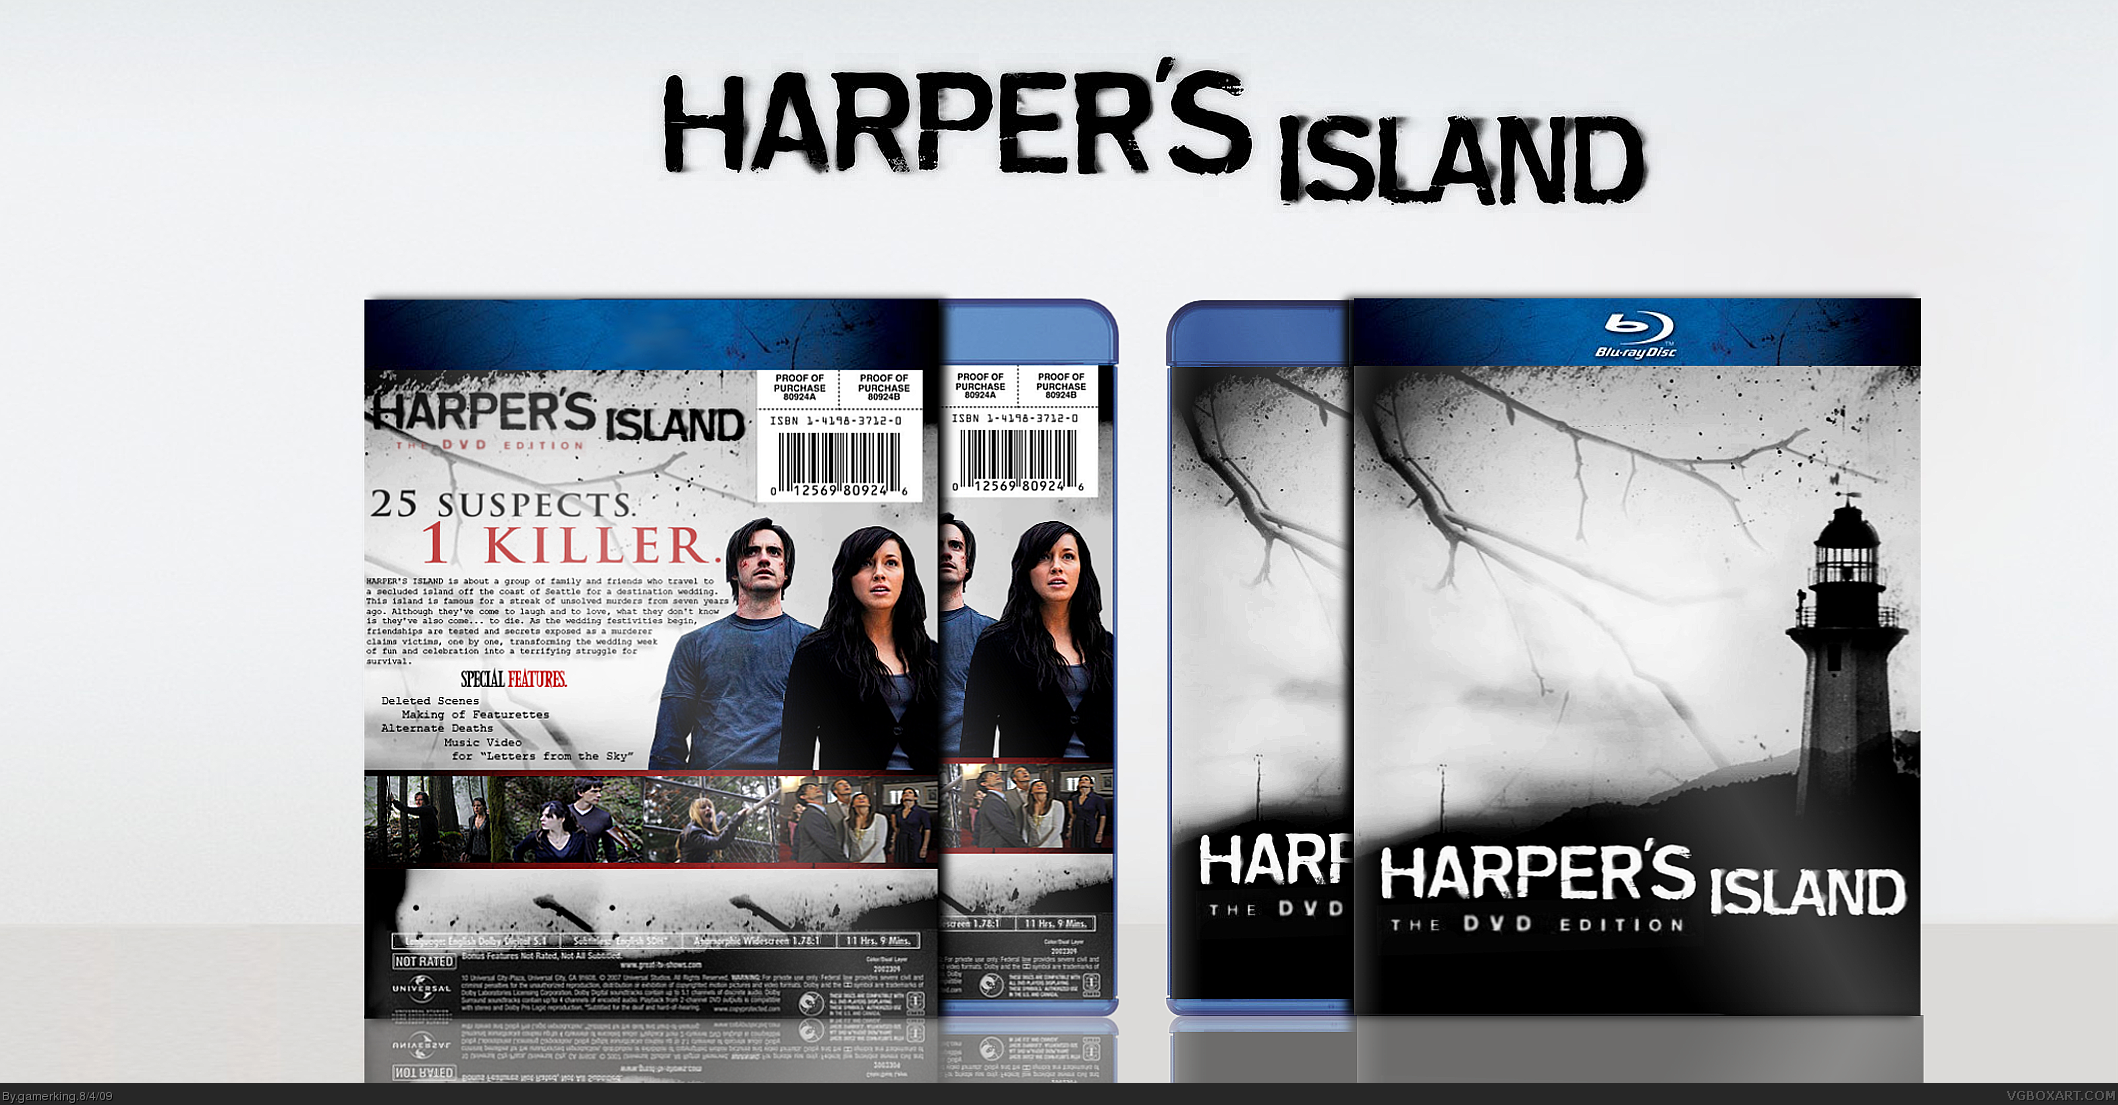 Harper's Island: The DVD Edition box cover